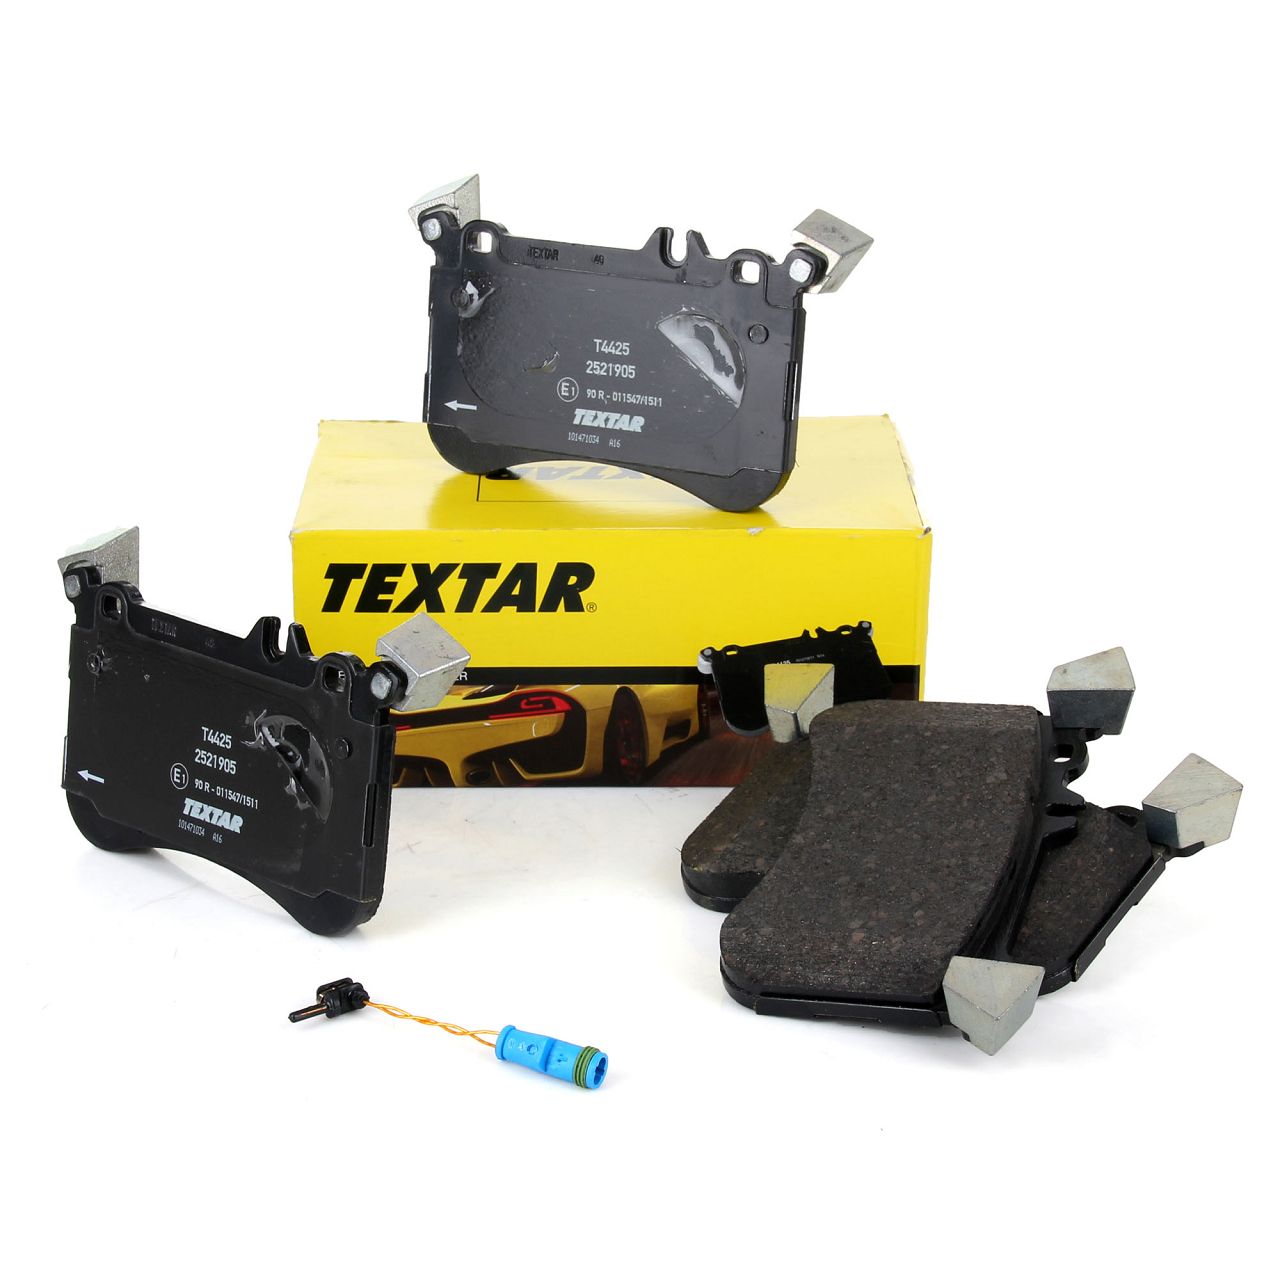 TEXTAR 2521905 Bremsbeläge + Wako MERCEDES W176 C117 X117 X156 45AMG vorne